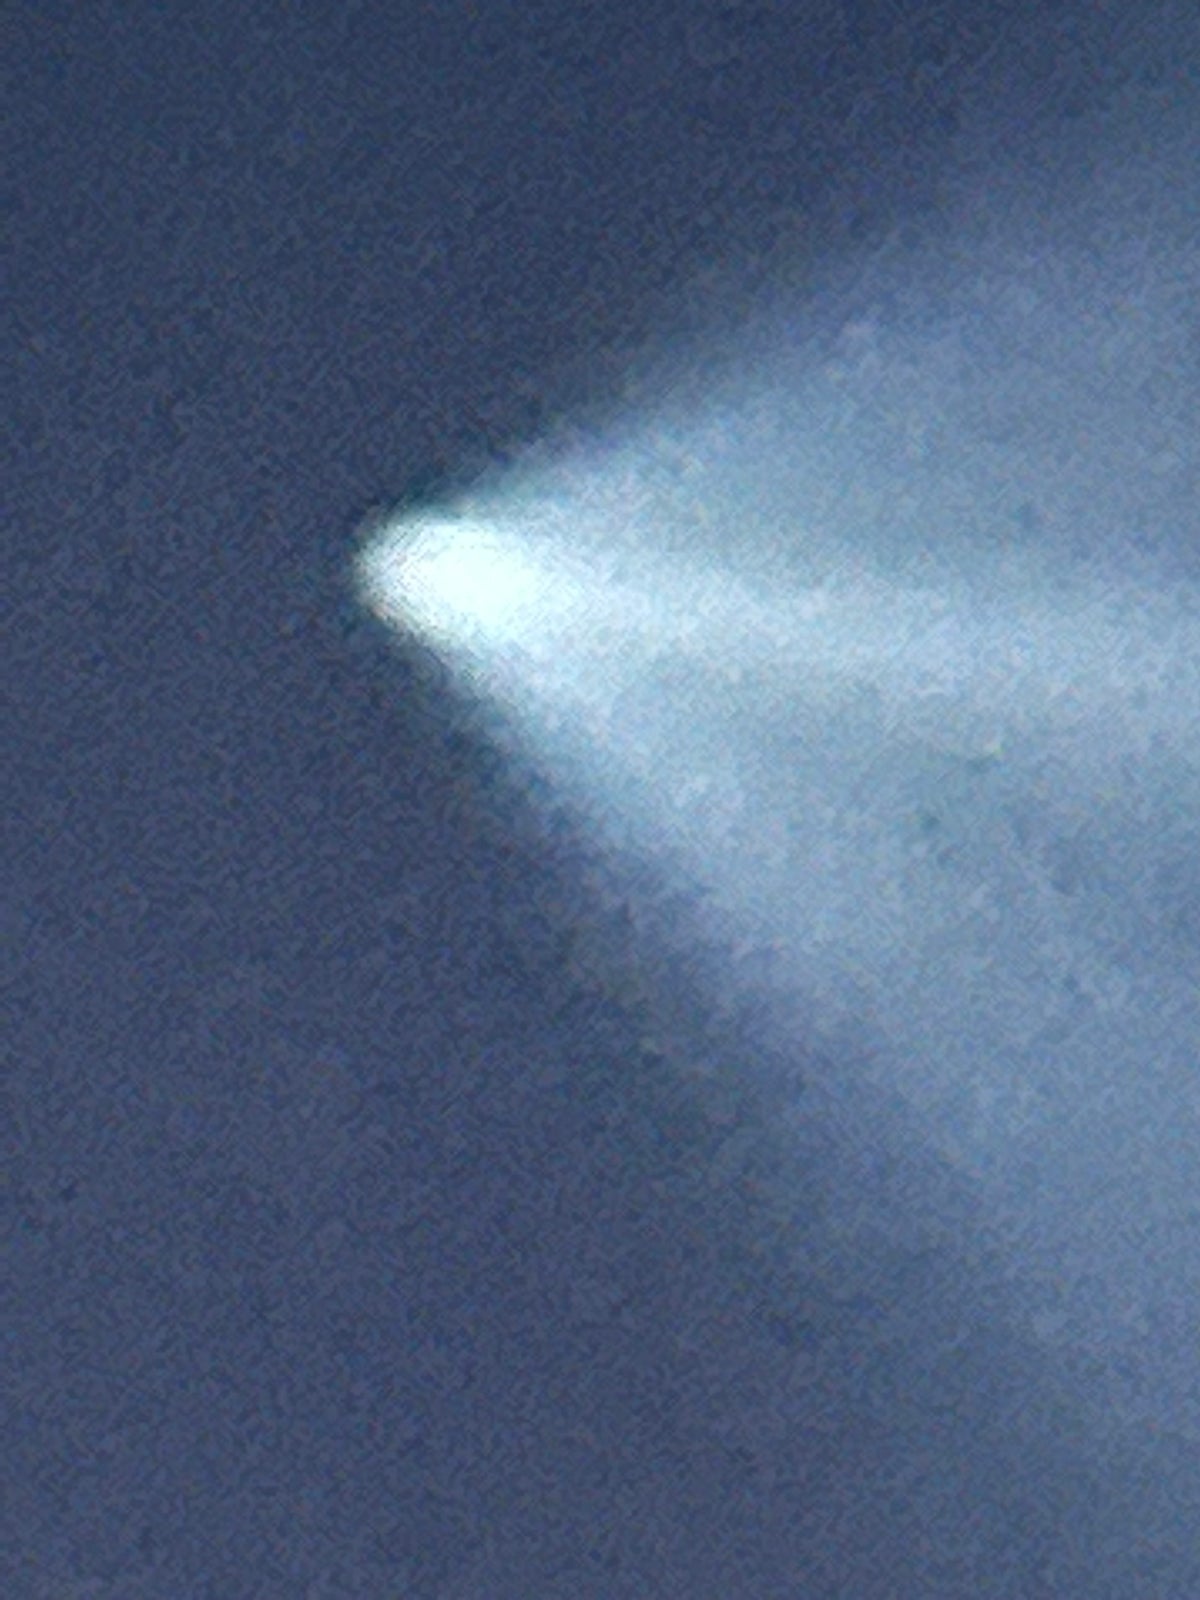 Estela de vapor de un cohete SpaceX Falcon 9 sobre Marlboro.  Foto cortesía de Virginia Klein Viewer, News 12 New Jersey.